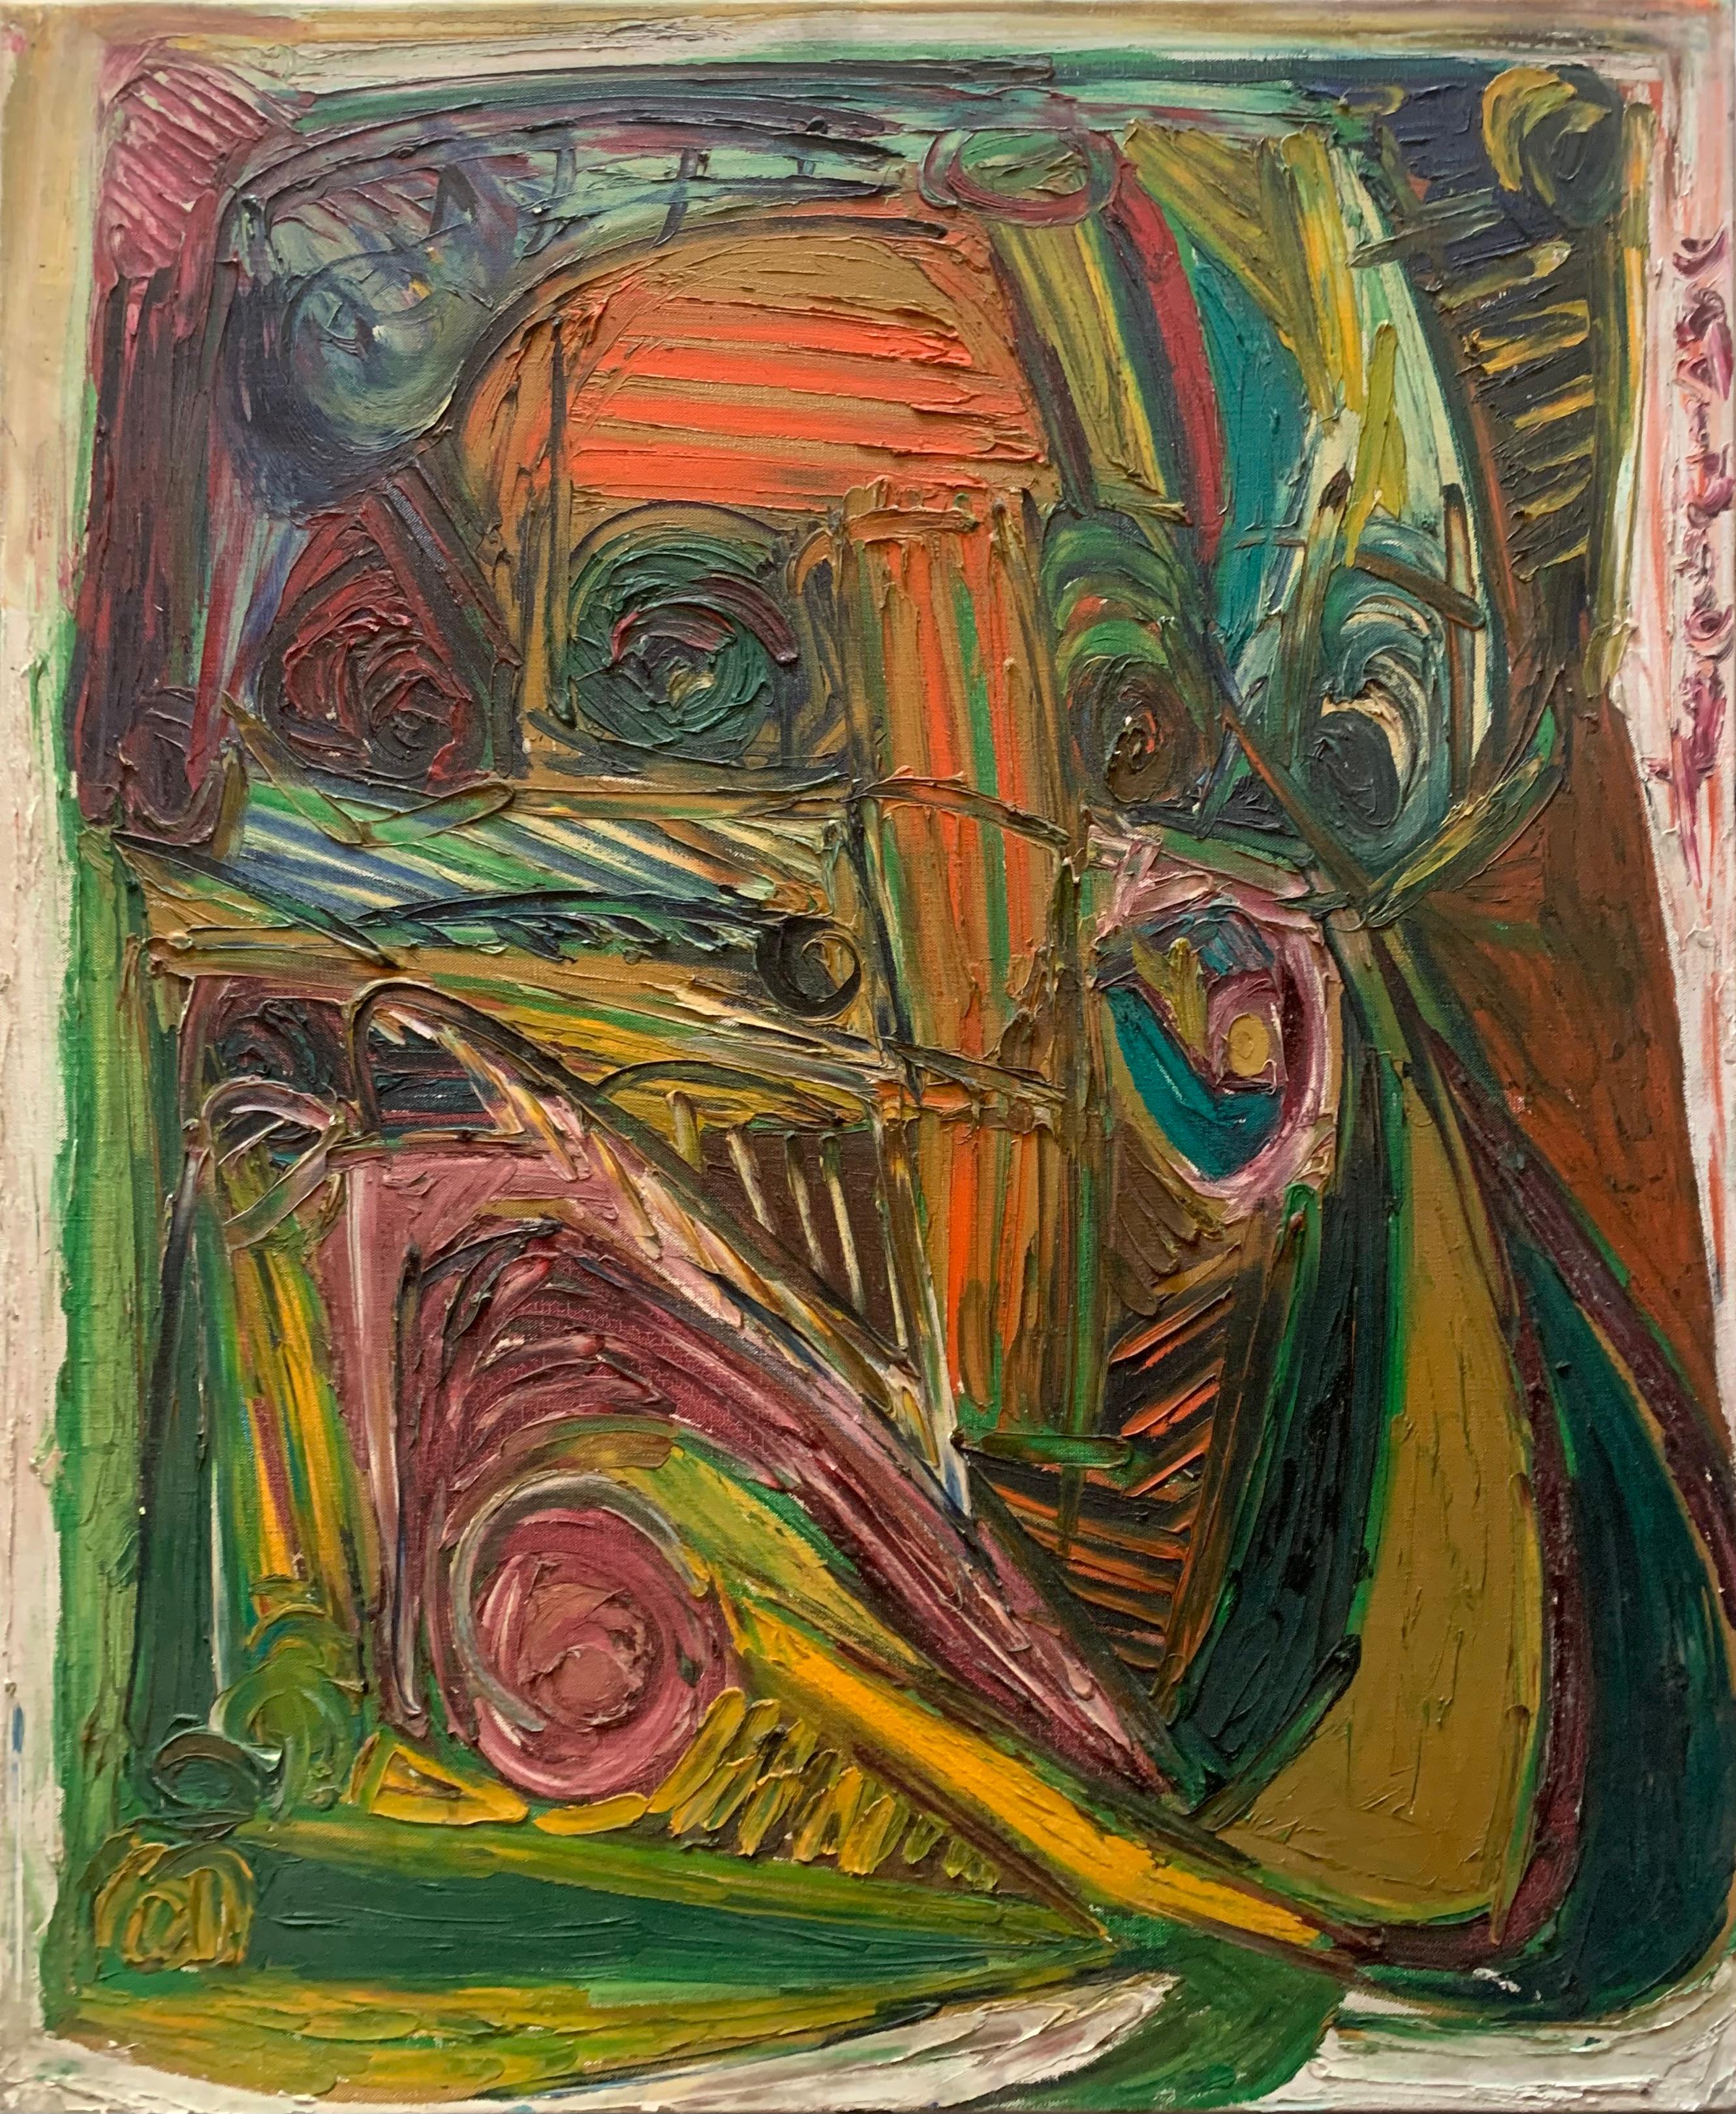 Patrick Boudon Abstract Painting – Ein geometrisches Spiel mit Masken, Augen und Linien. Nachkriegsexpressionist. 1970's.